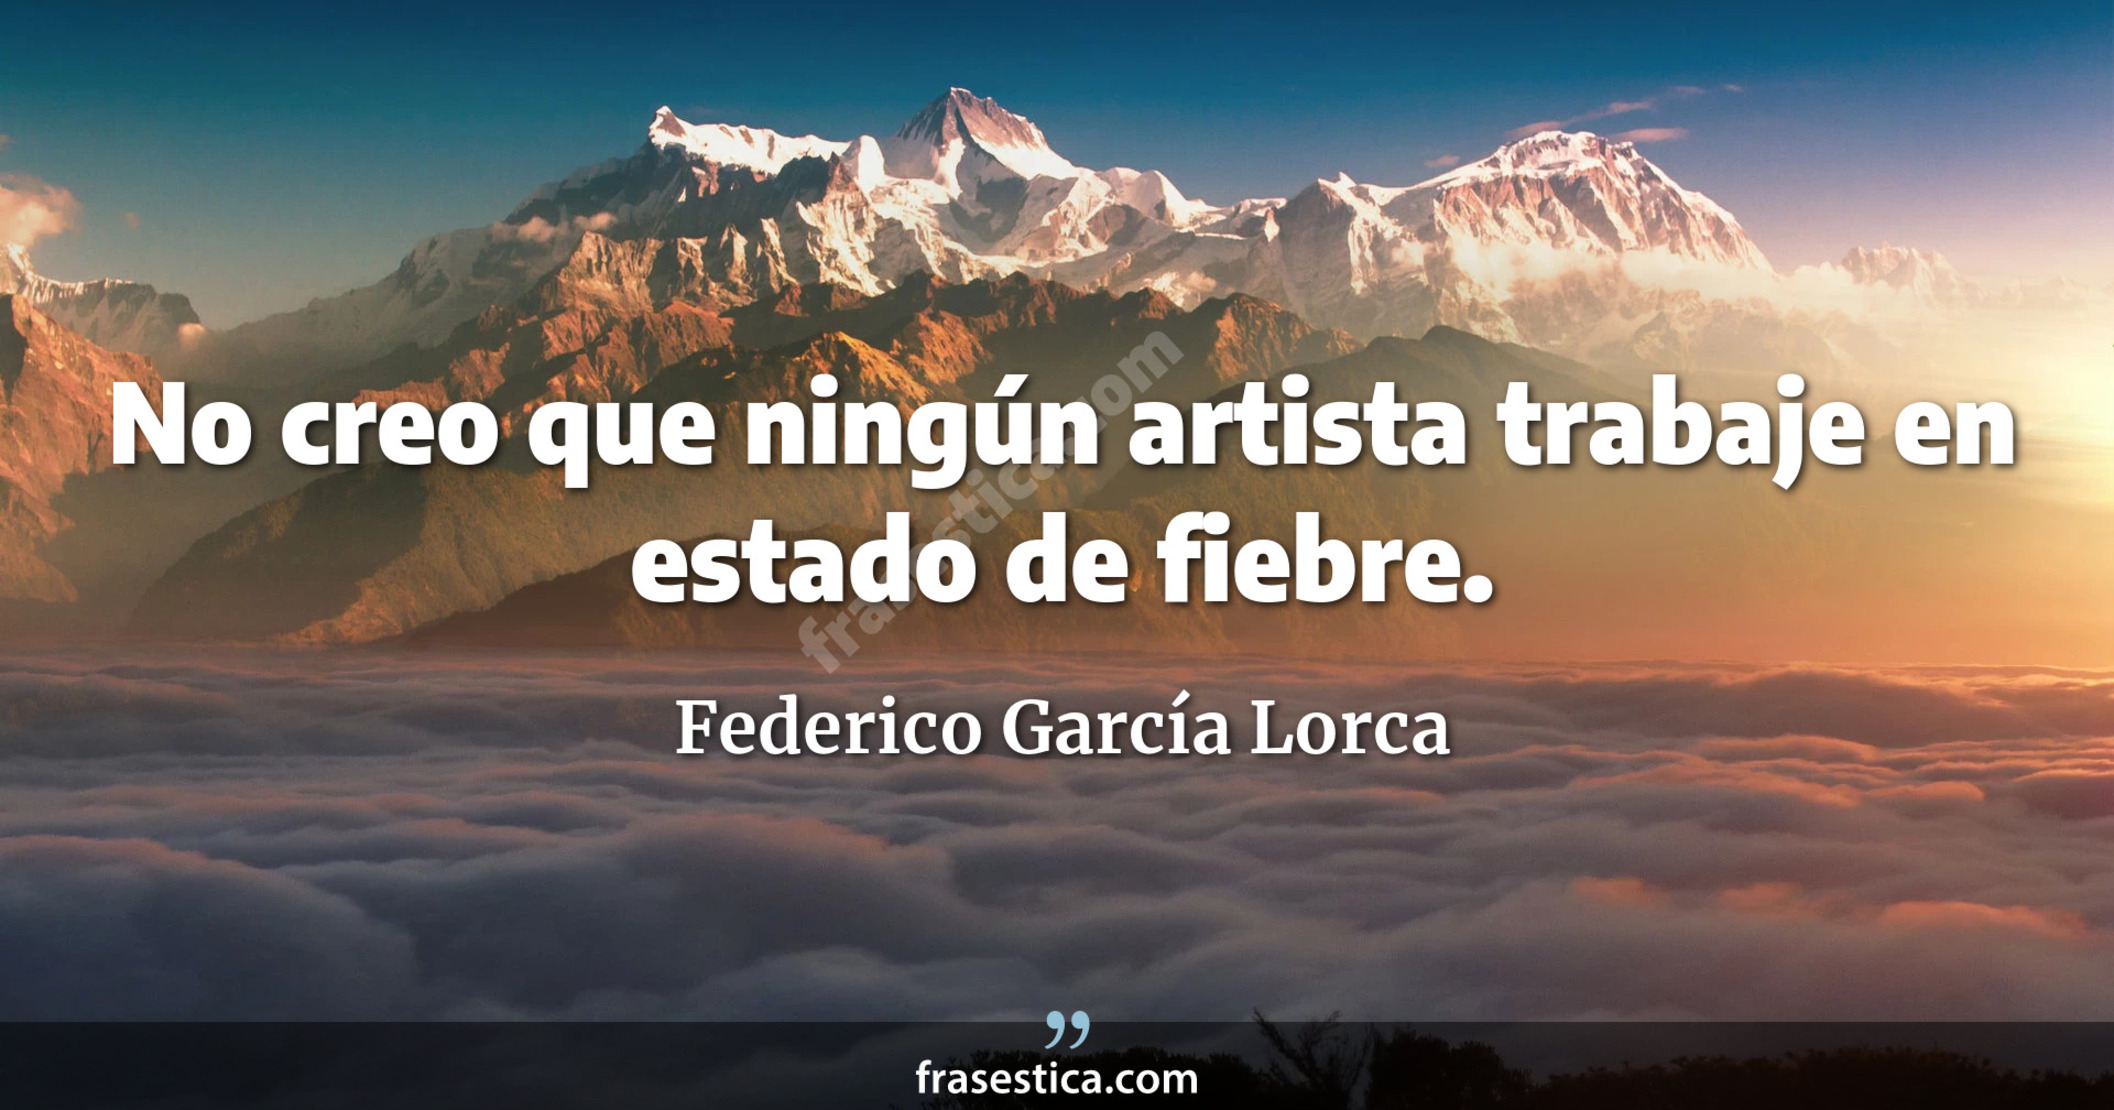 No creo que ningún artista trabaje en estado de fiebre. - Federico García Lorca